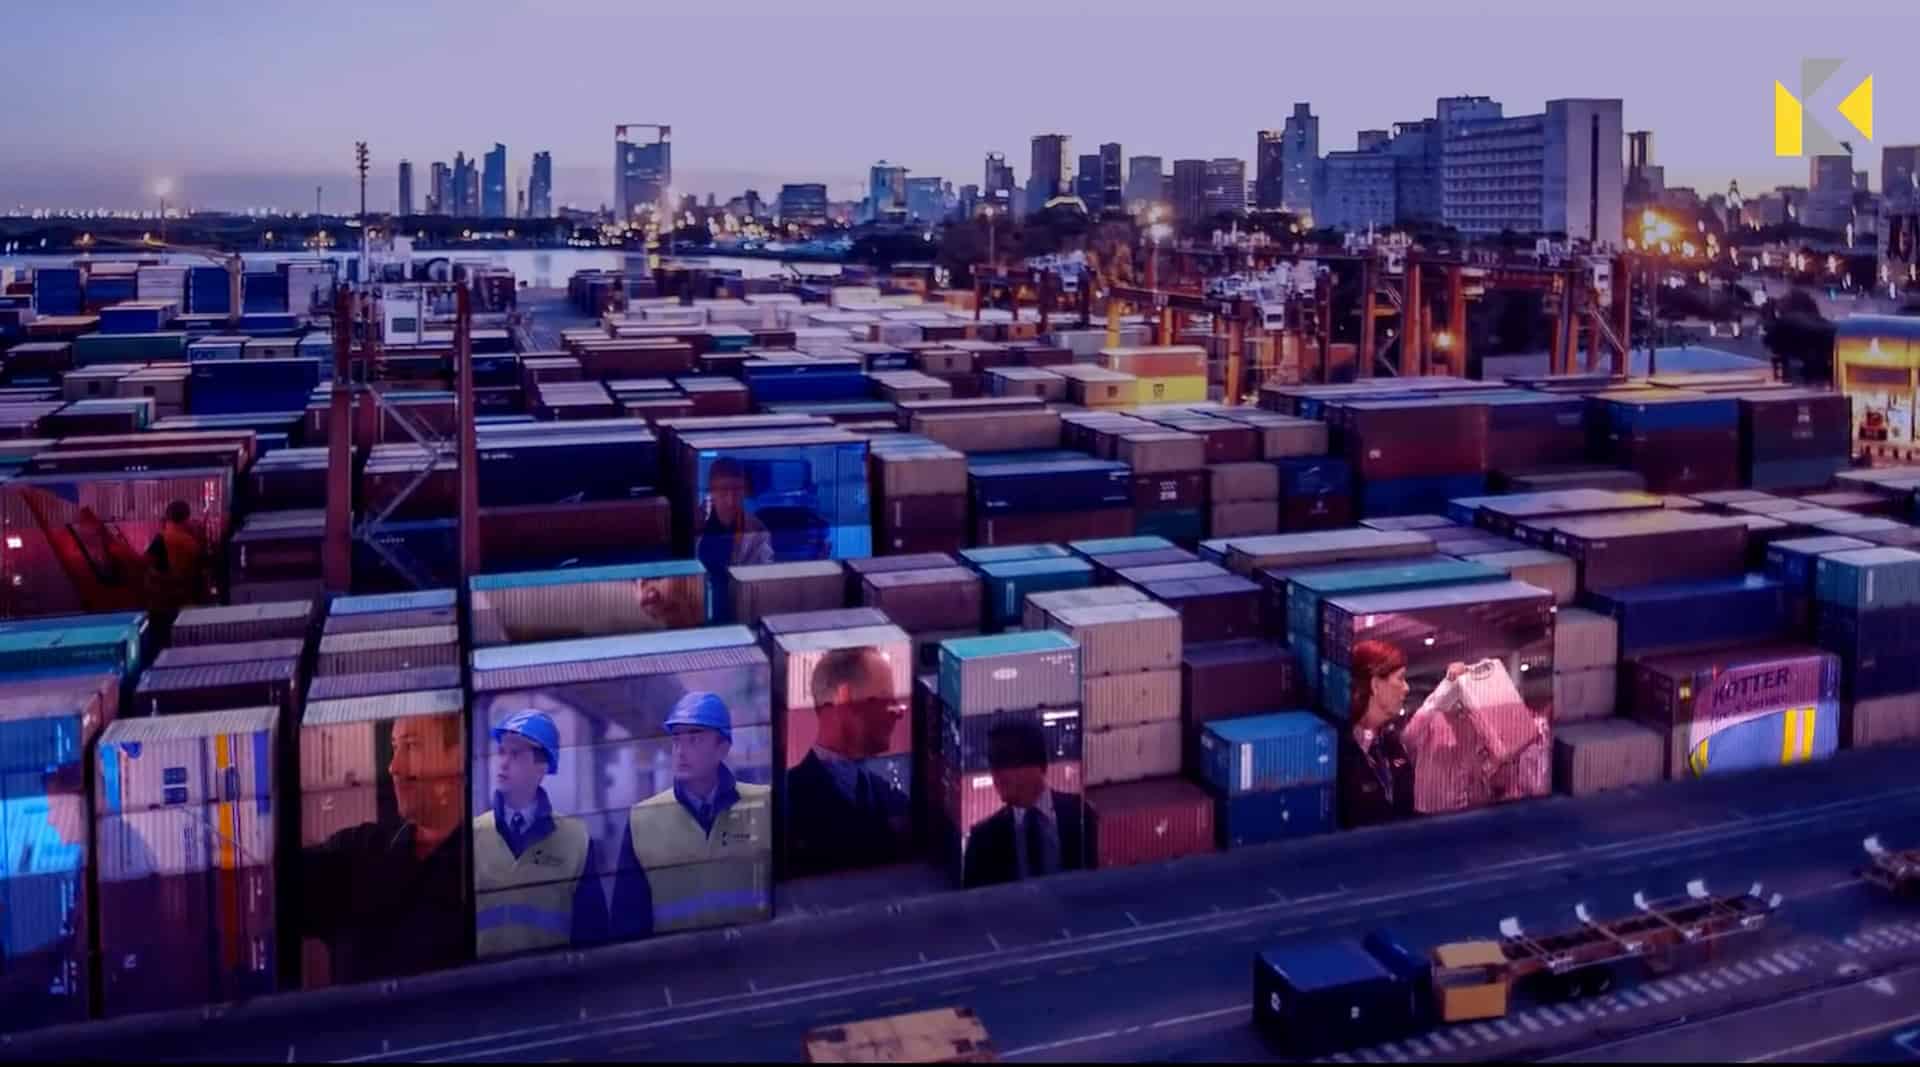 Bild aus dem Imagefilm mit einer Containeransicht in der Mitarbeiter von Koetter bei der Arbeit gezeigt werden